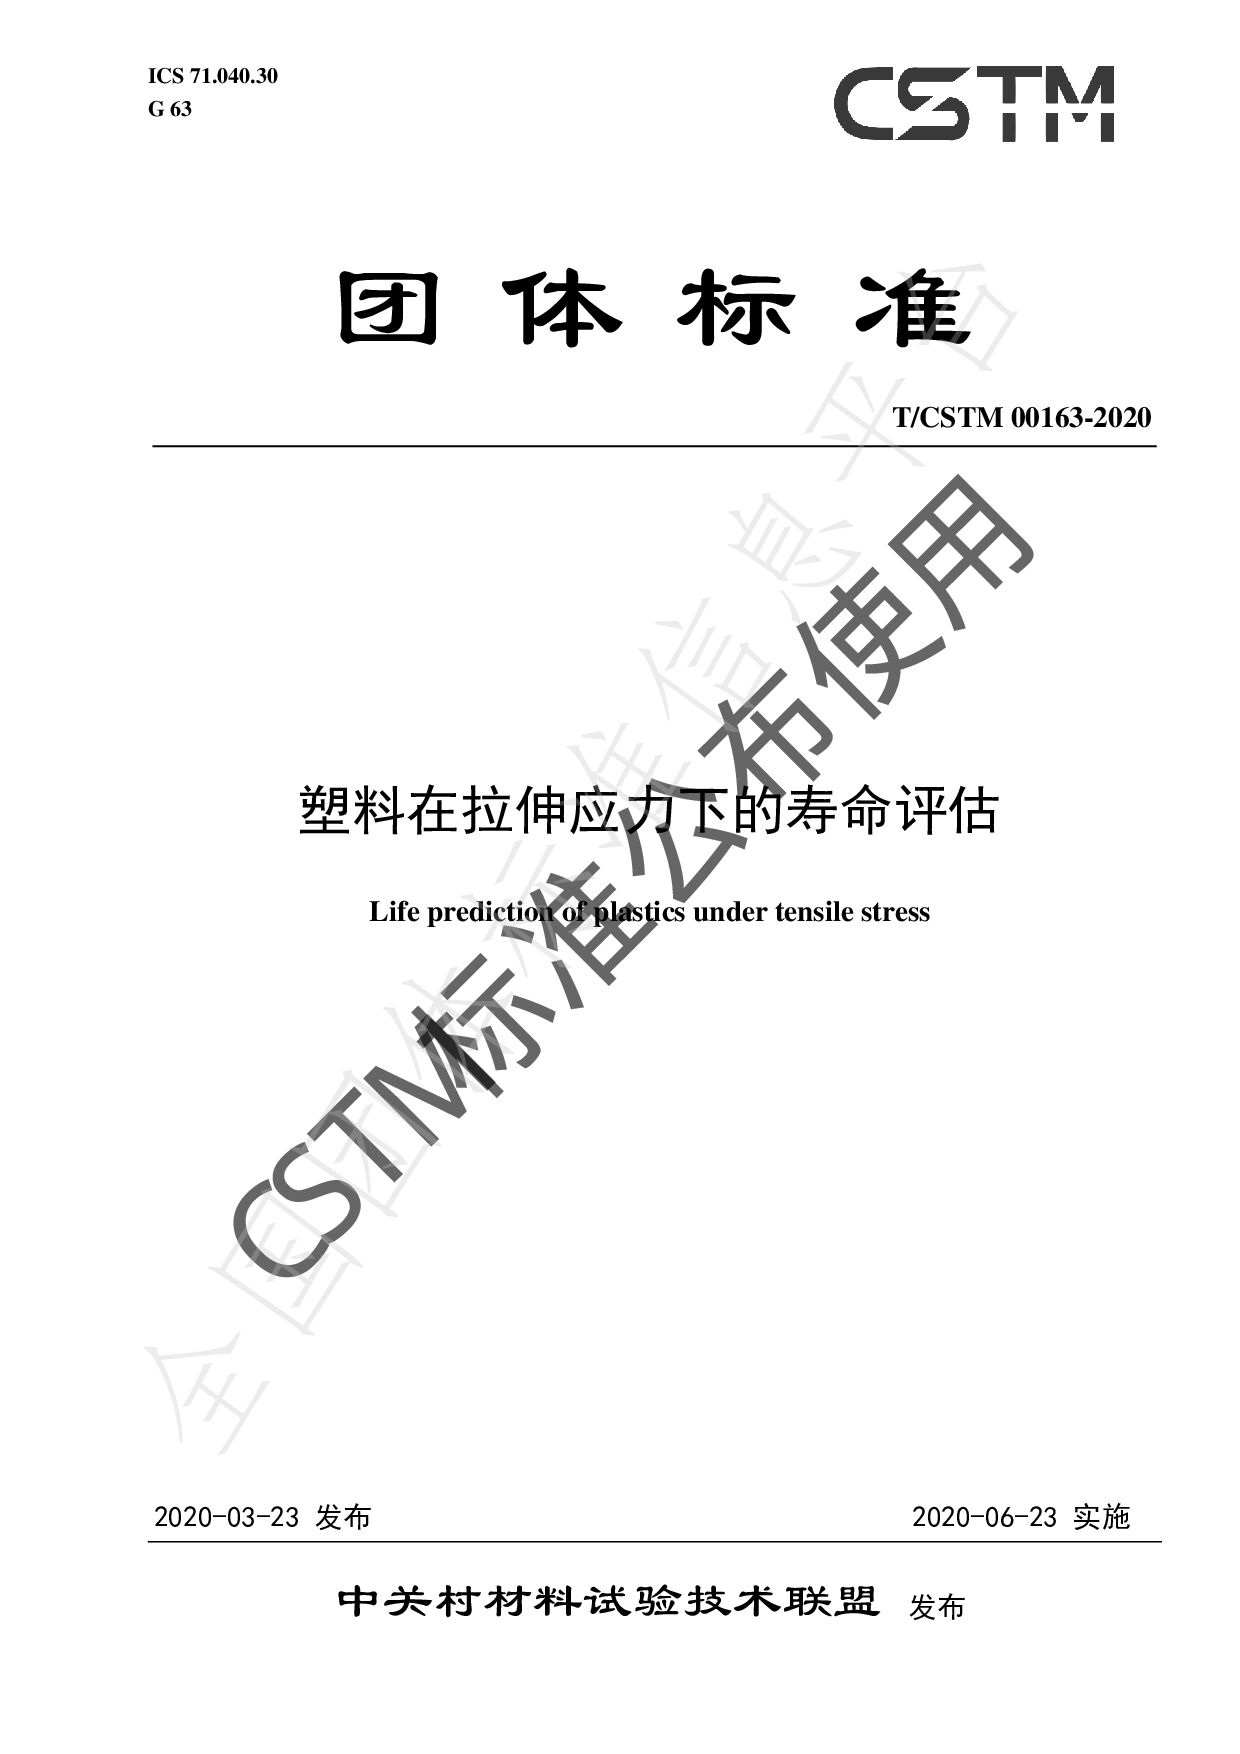 T/CSTM 00163-2020封面图